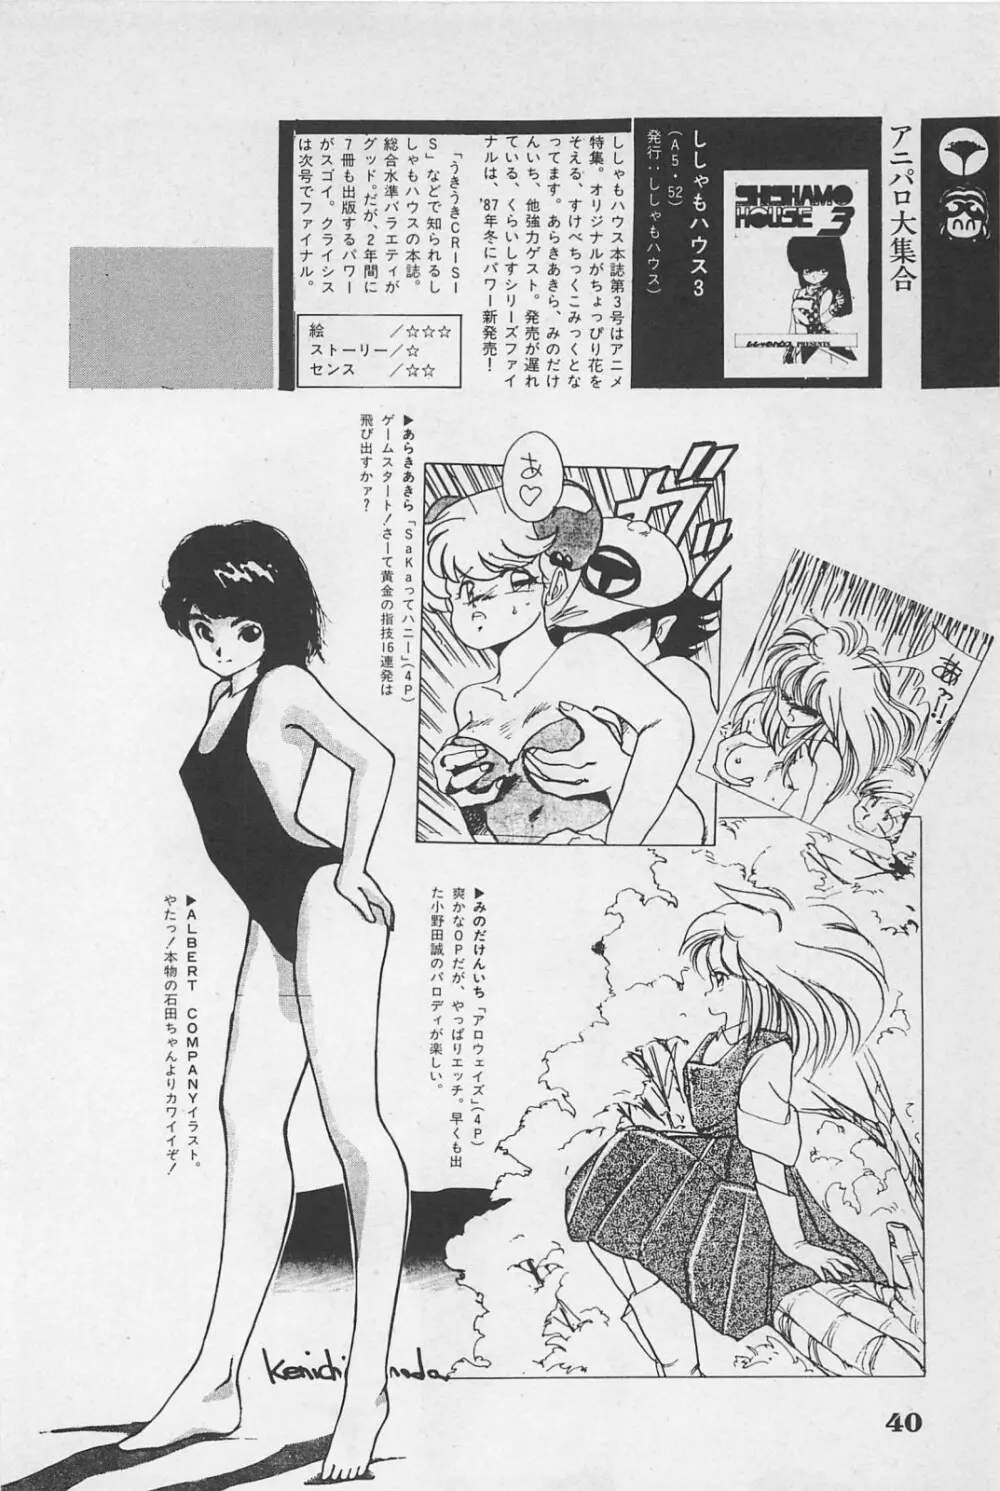 美少女症候群 1985 42ページ